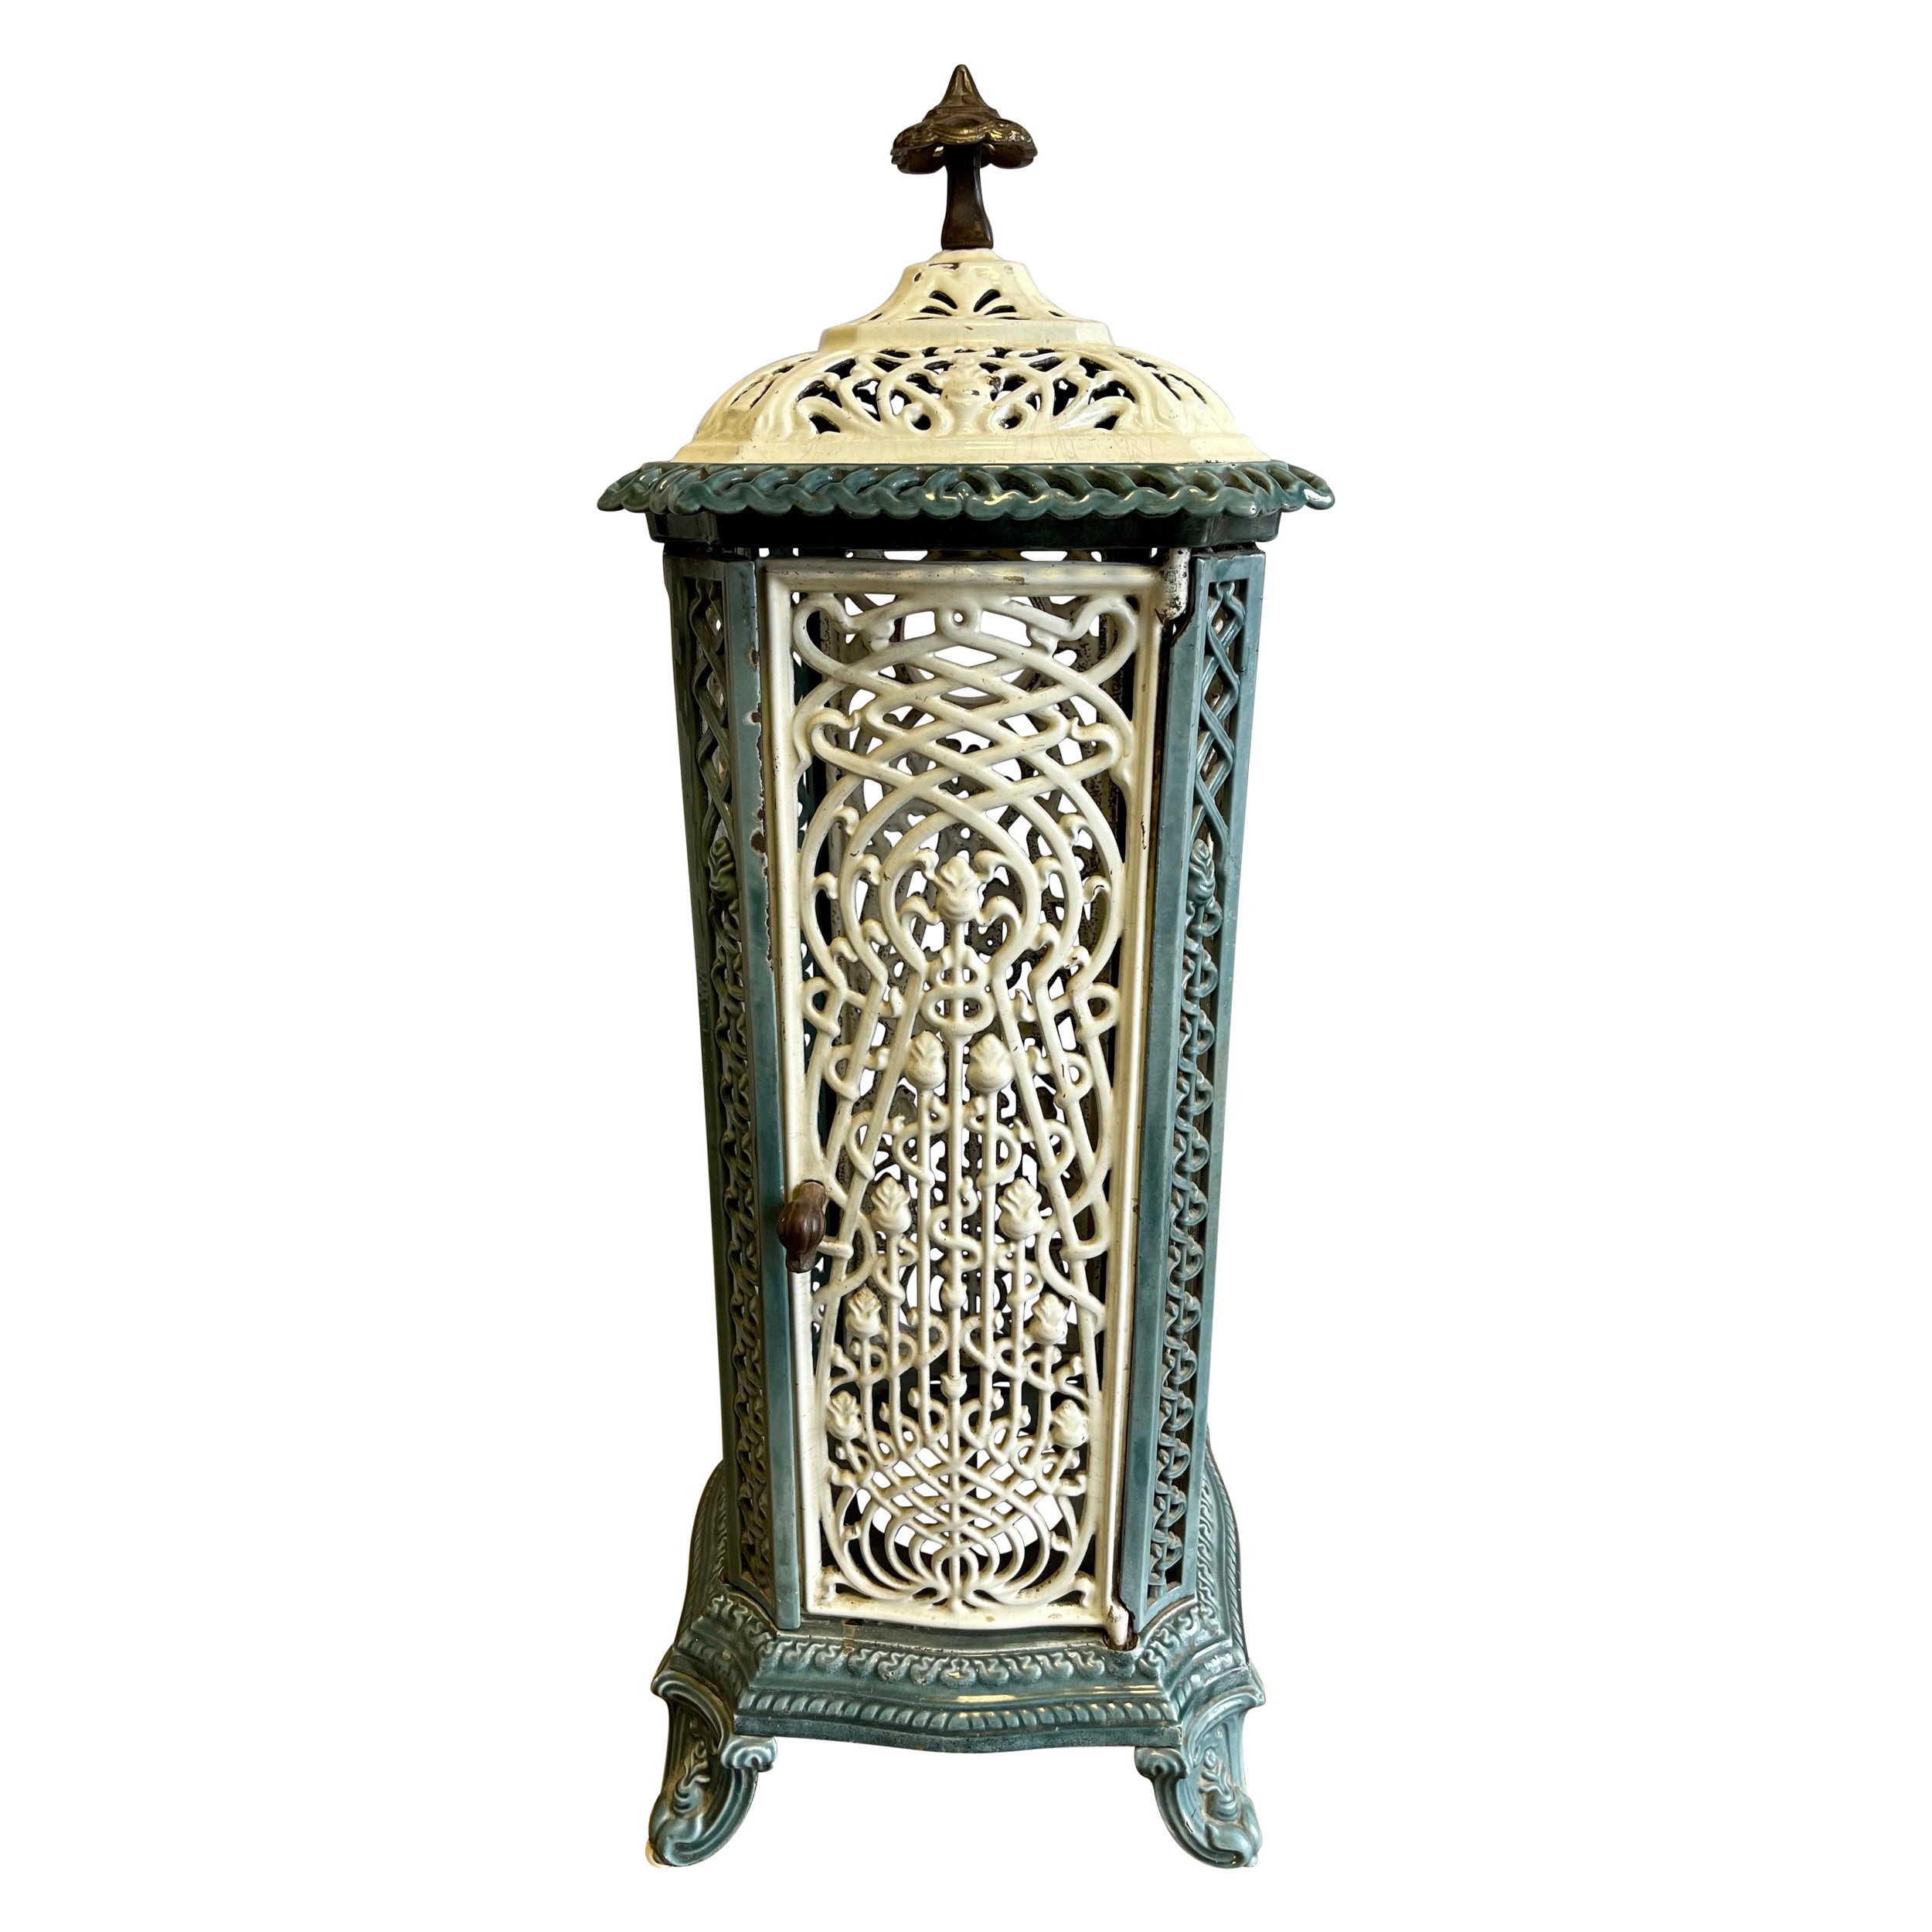 Antique European Art Nouveau Belgian Cast Iron and Enamel Stove Heater